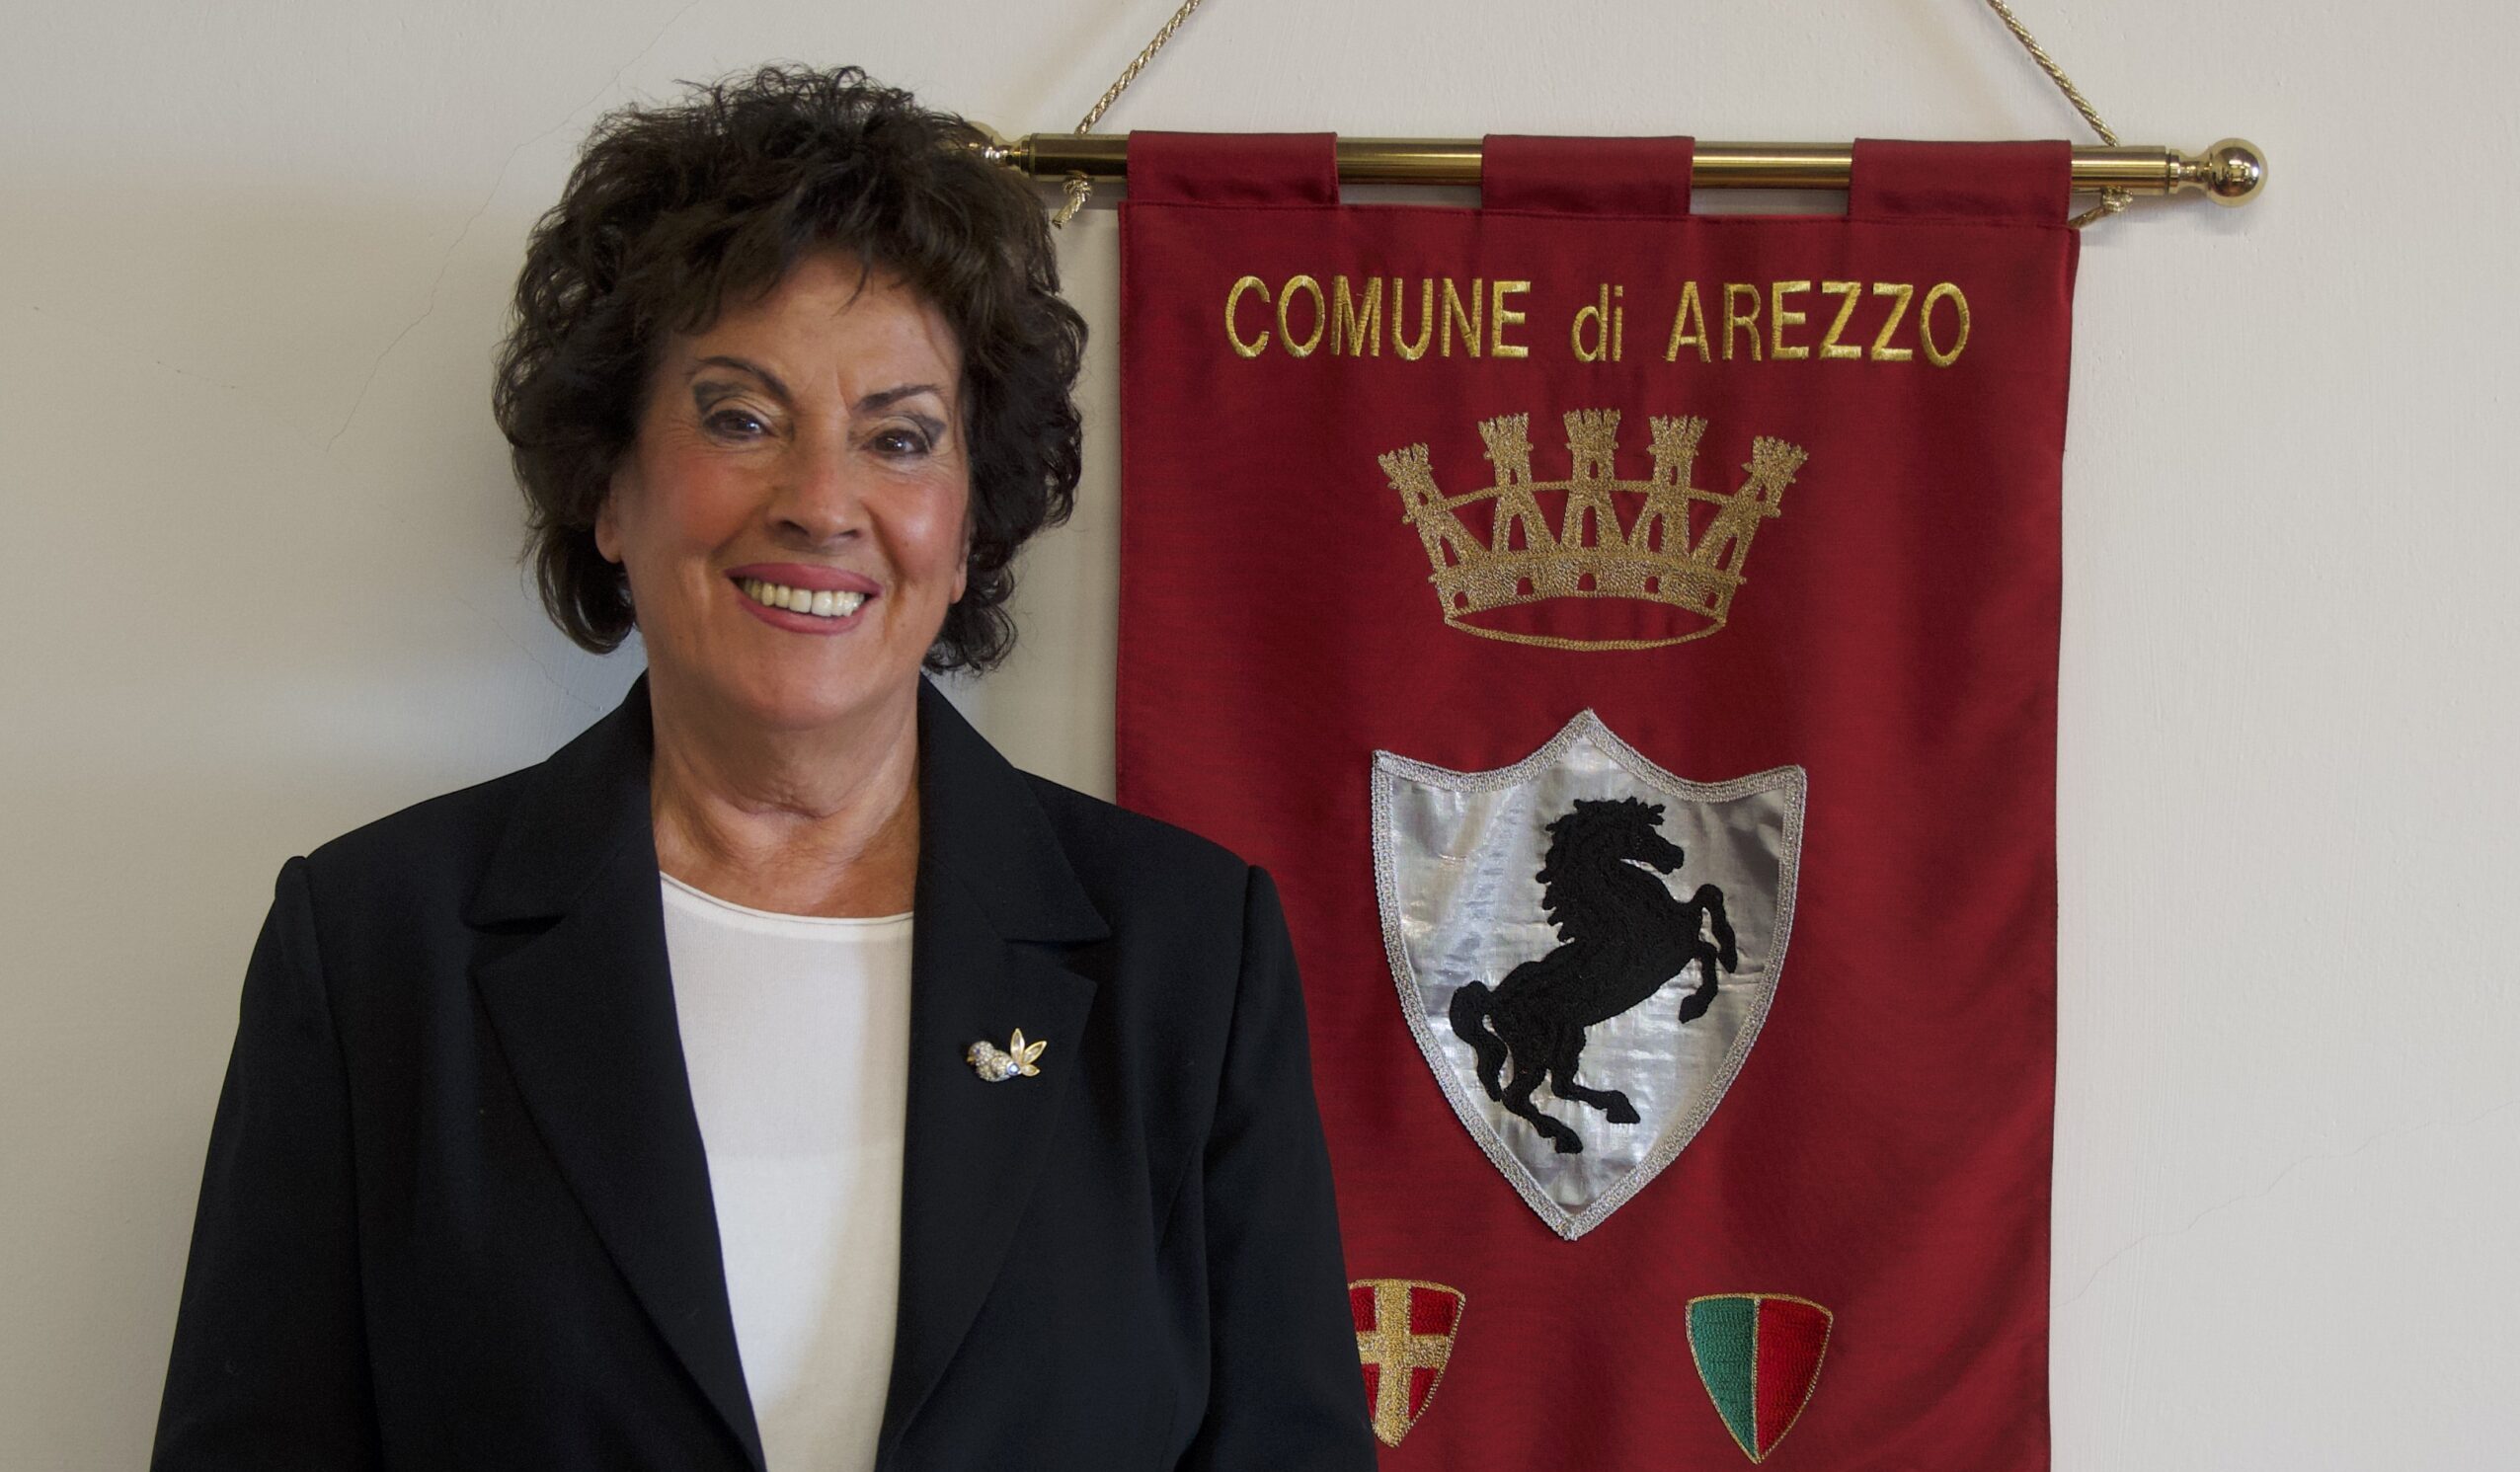 Bocconi avvelenati: un intervento della polizia municipale di Arezzo